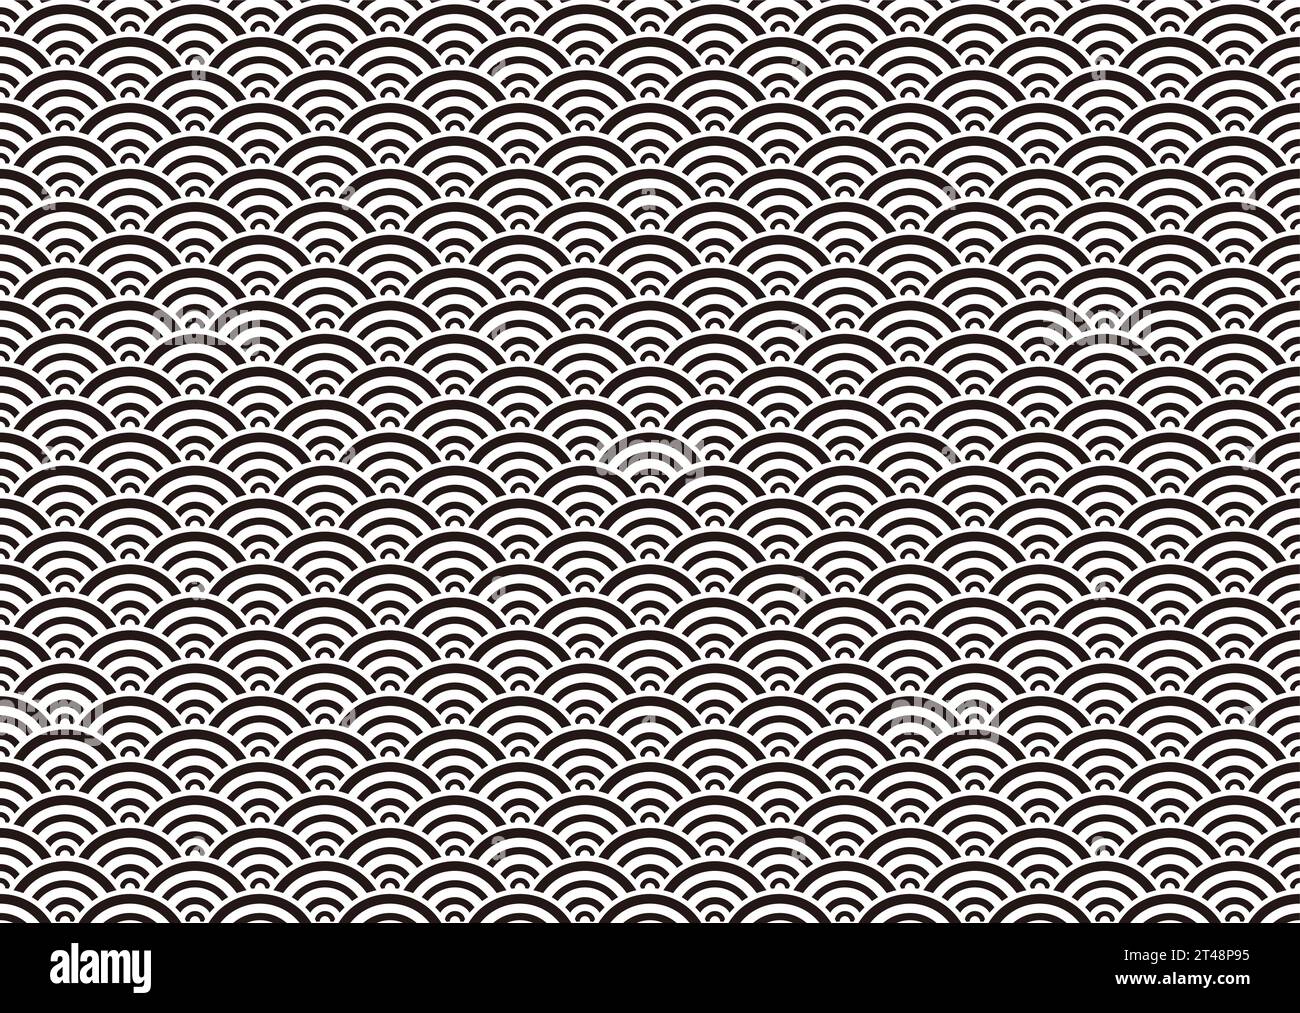 Horizontalement et verticalement répétable Monochrome Seamless Japanese Vintage Pattern sur Un fond blanc. Illustration vectorielle. Illustration de Vecteur